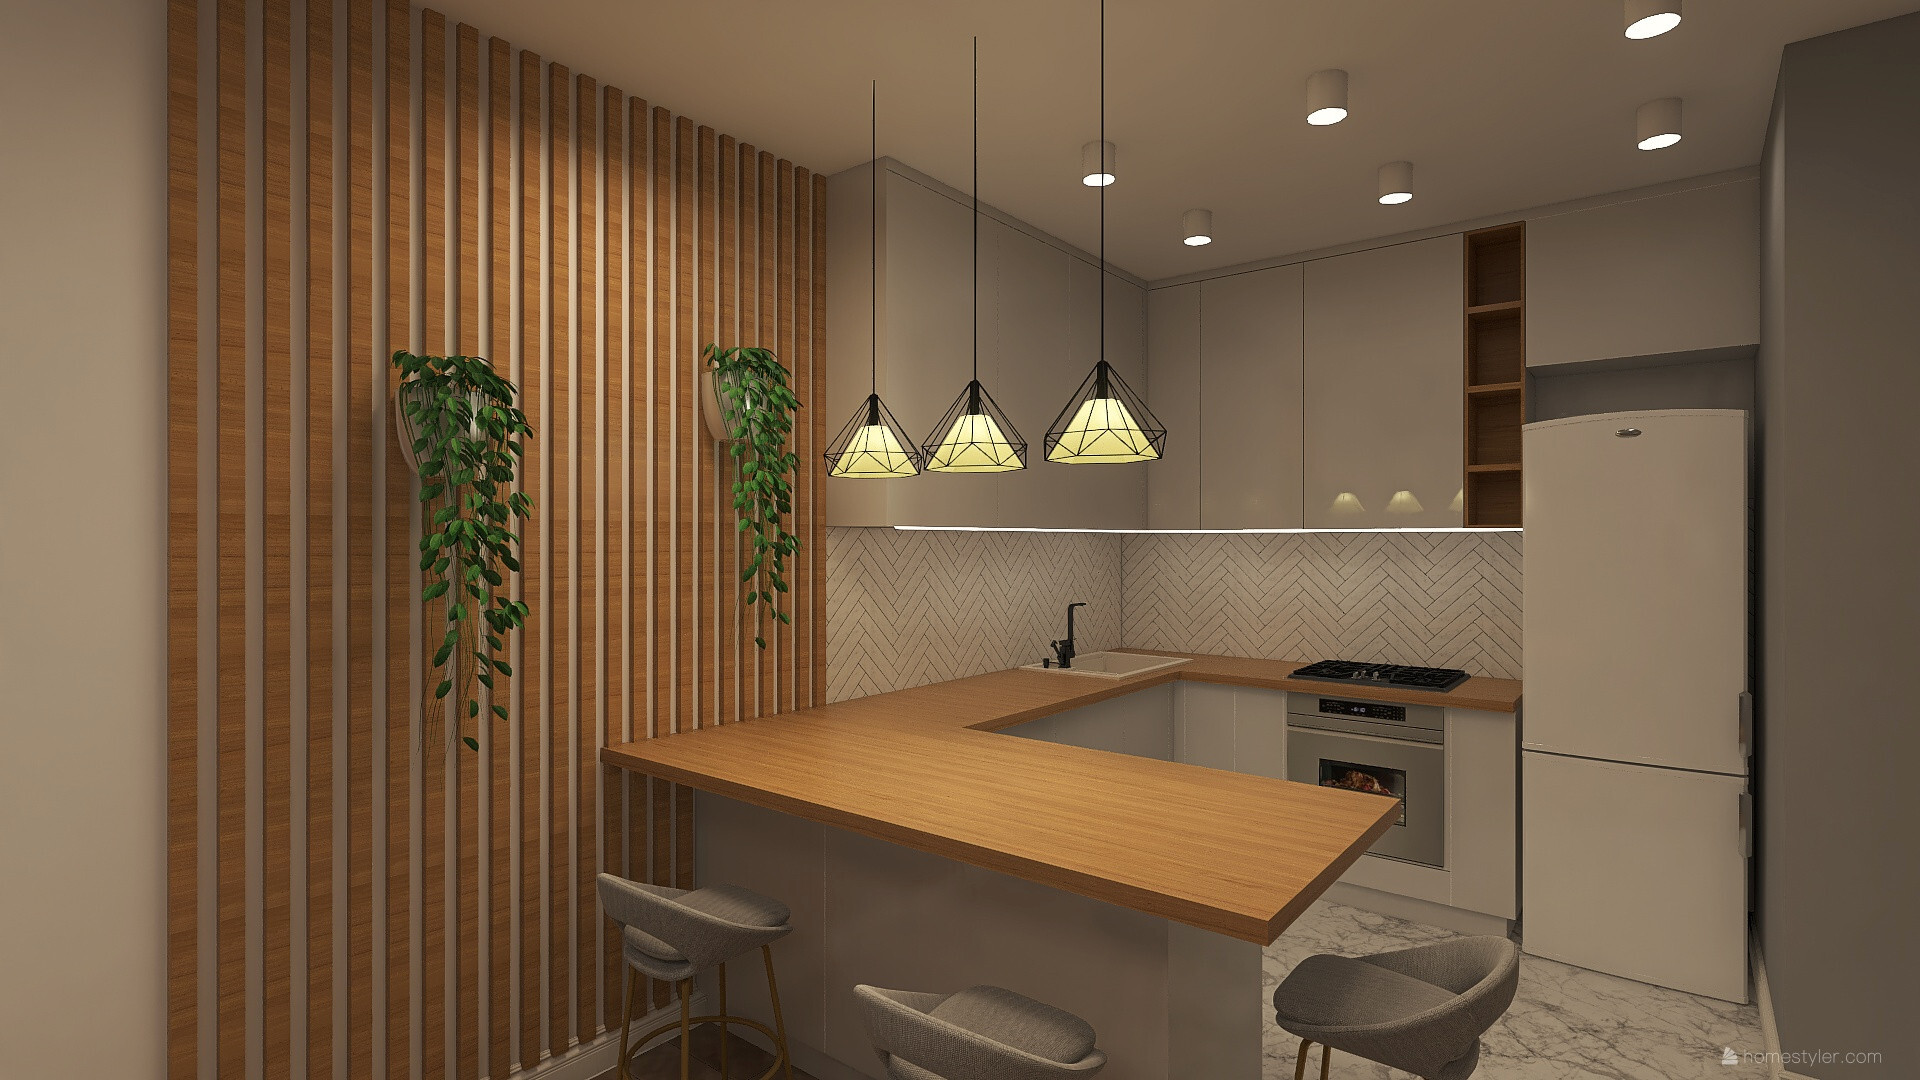 Интерьер кухни cветовыми линиями, рейками с подсветкой, светильниками над столом и подсветкой светодиодной в современном стиле